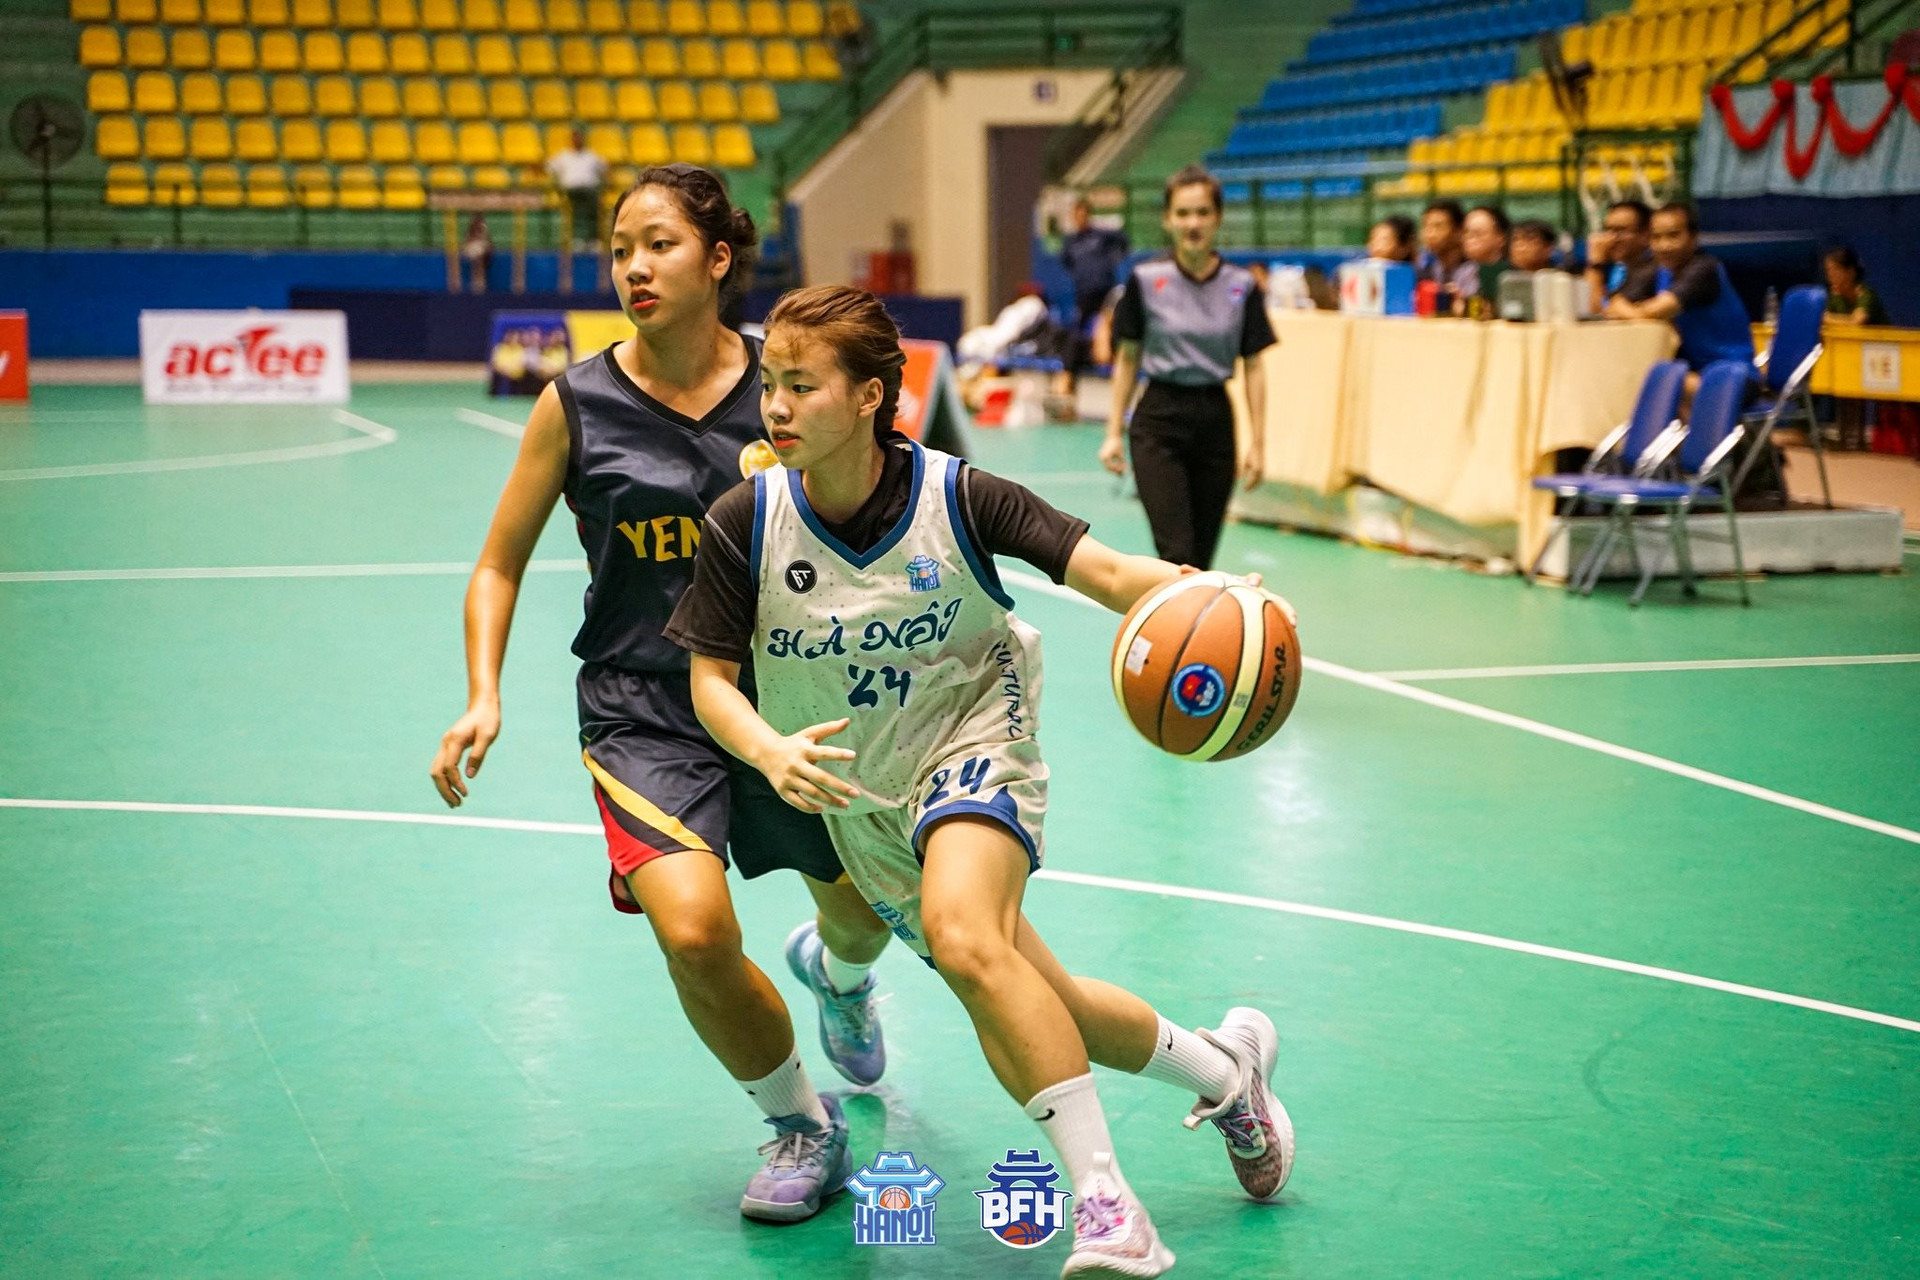 Bóng rổ nữ Hà Nội lần đầu vô địch giải U18 quốc gia - Ảnh 1.